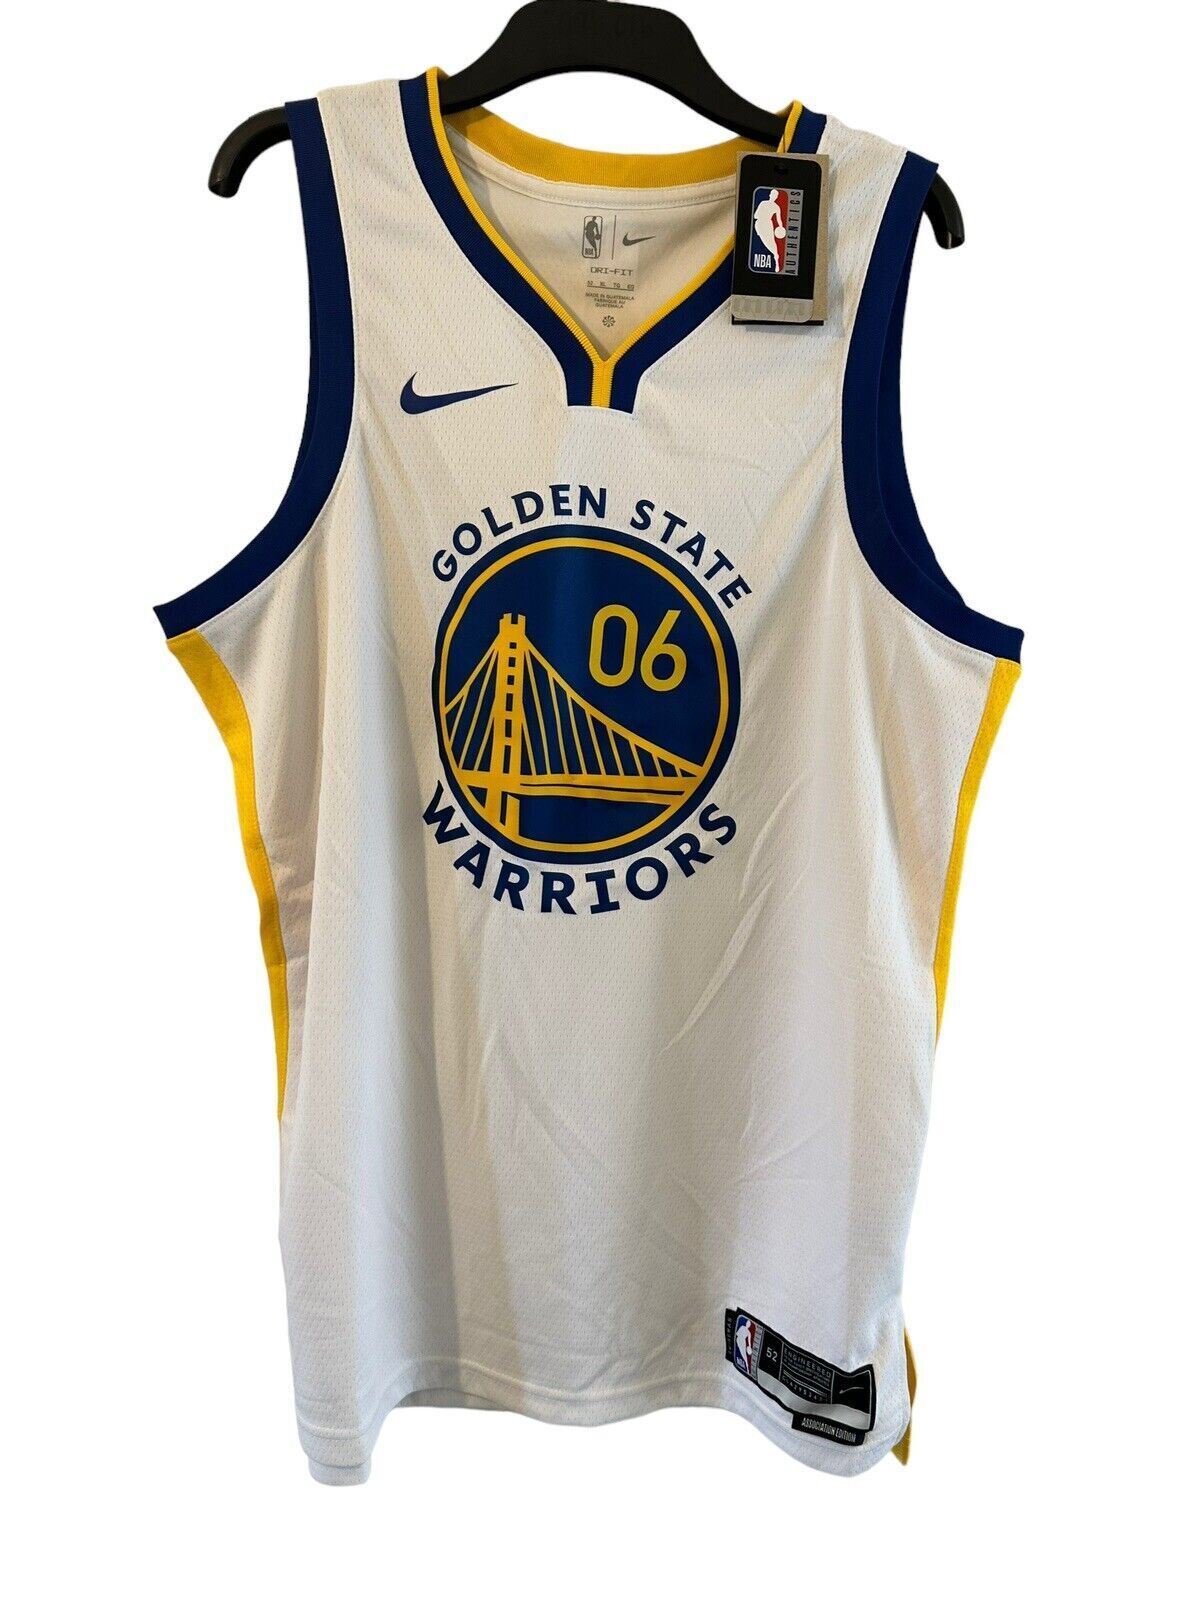 Nike NBA Golden State Warriors Association Edition Jersey MARIE 06 Men’s XL *DF*